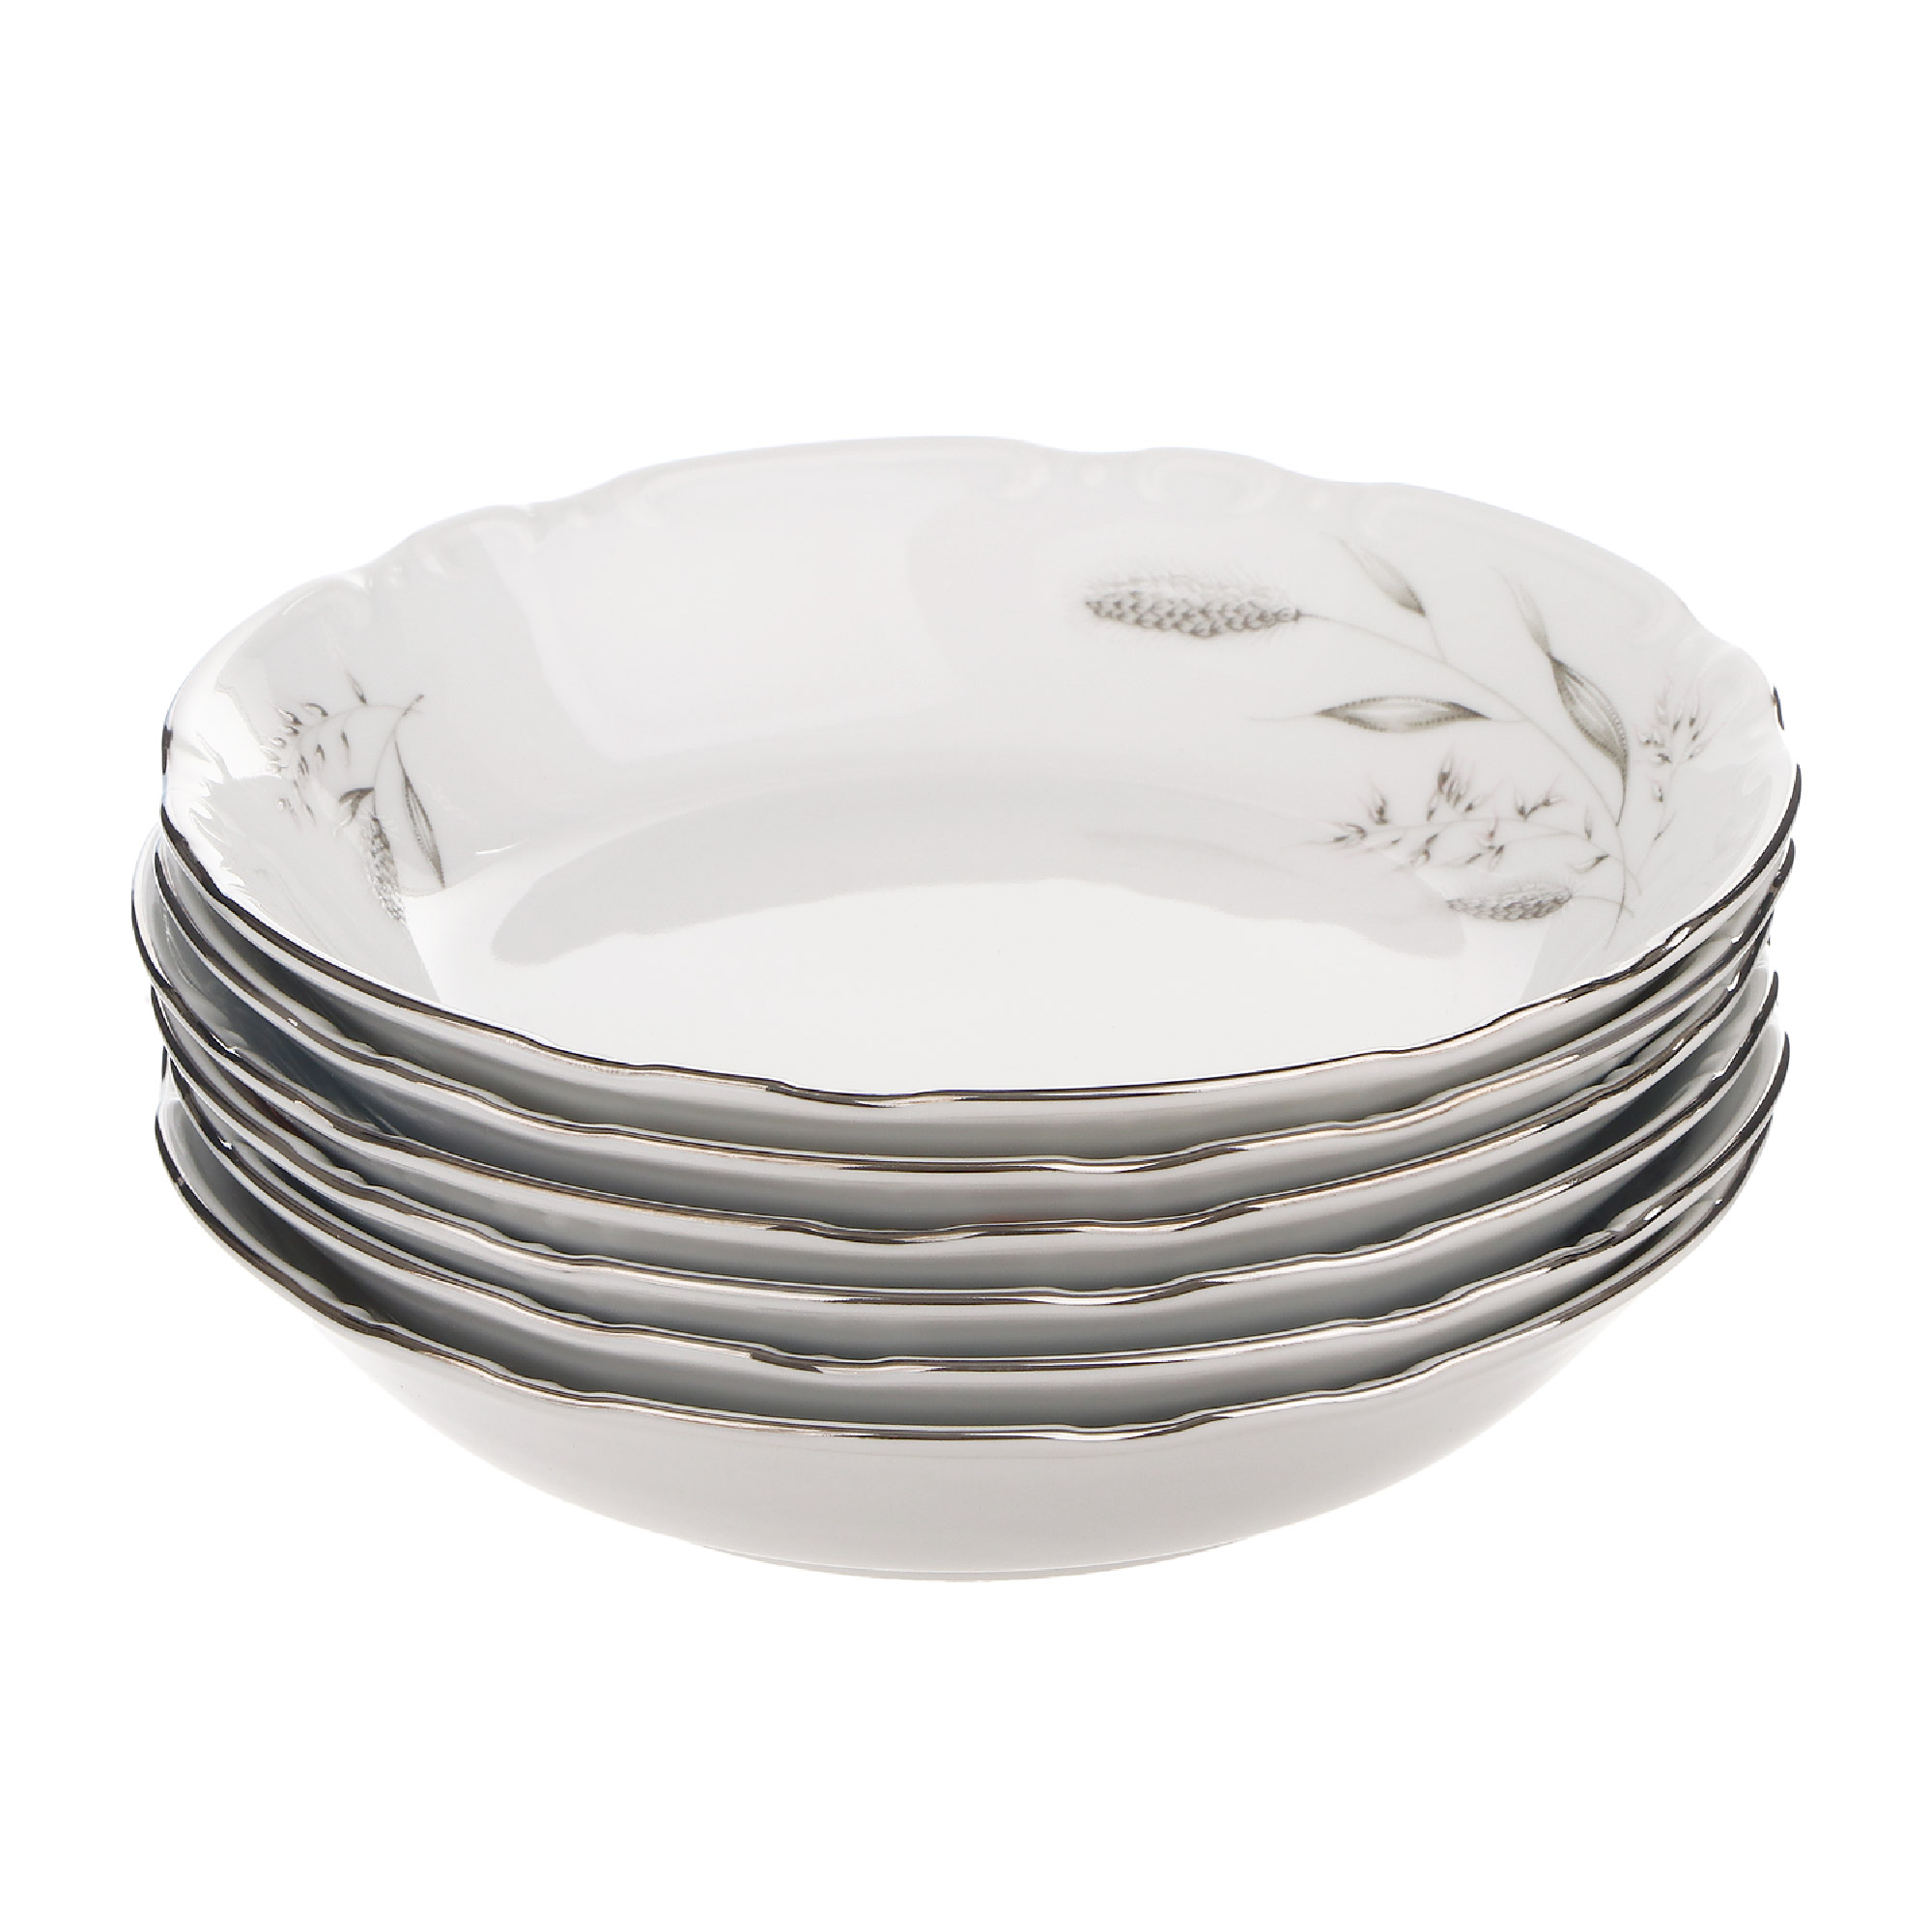 Набор тарелок Thun1794 Coupsoup декор серебряные колосья, отводка платина 19 см 6 шт блюдо мелкое 30 см thun1794 декор серебряные колосья отводка платина